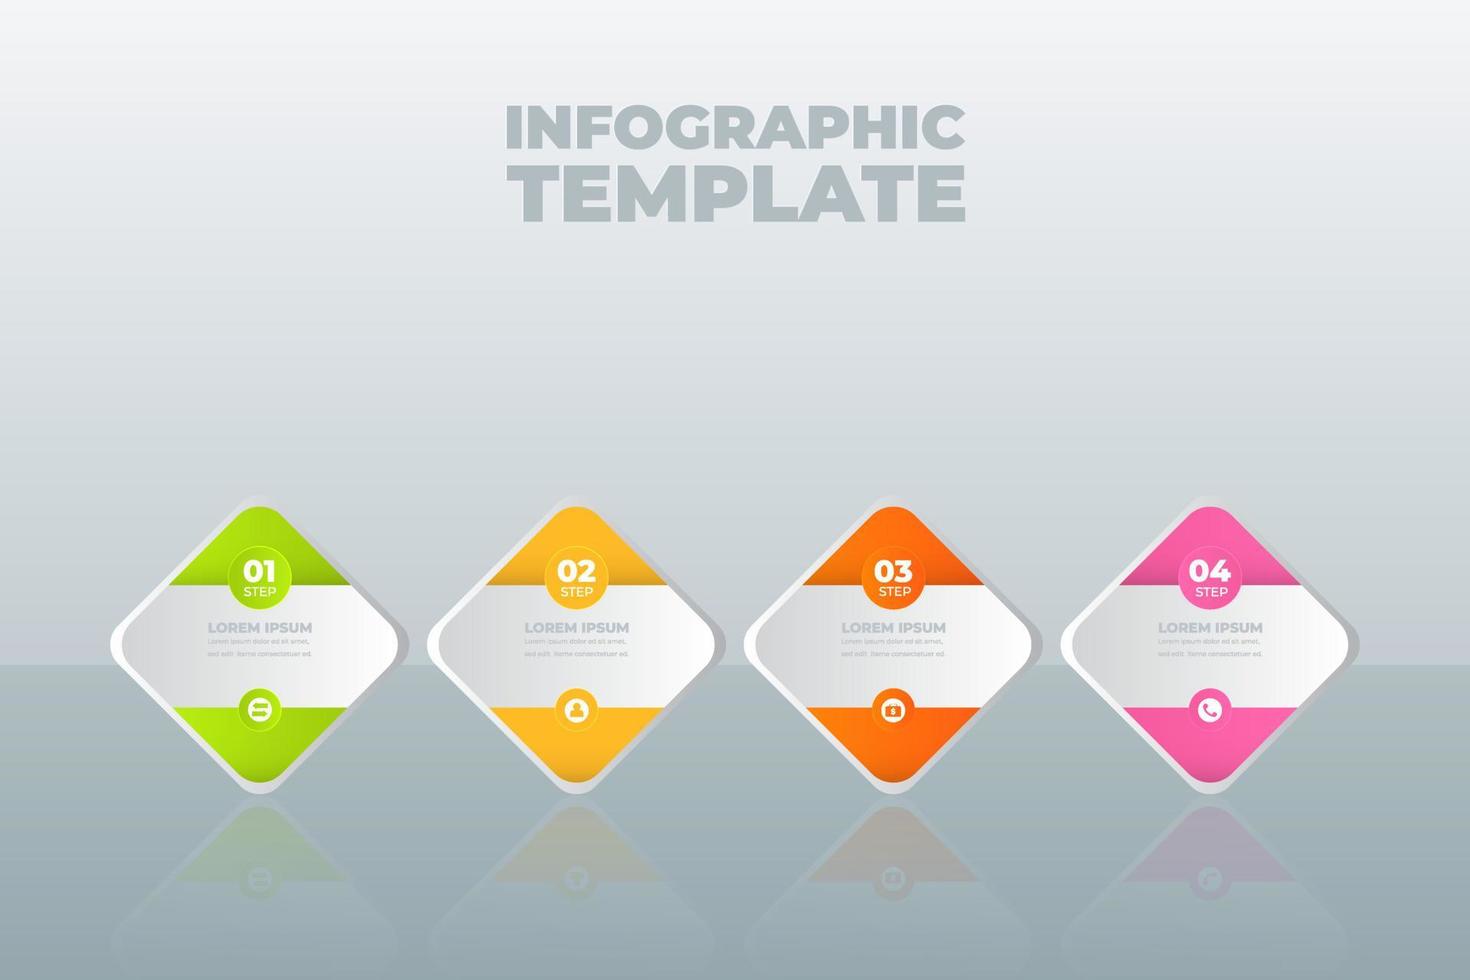 vector infographic ontwerpsjabloon met opties of stappen